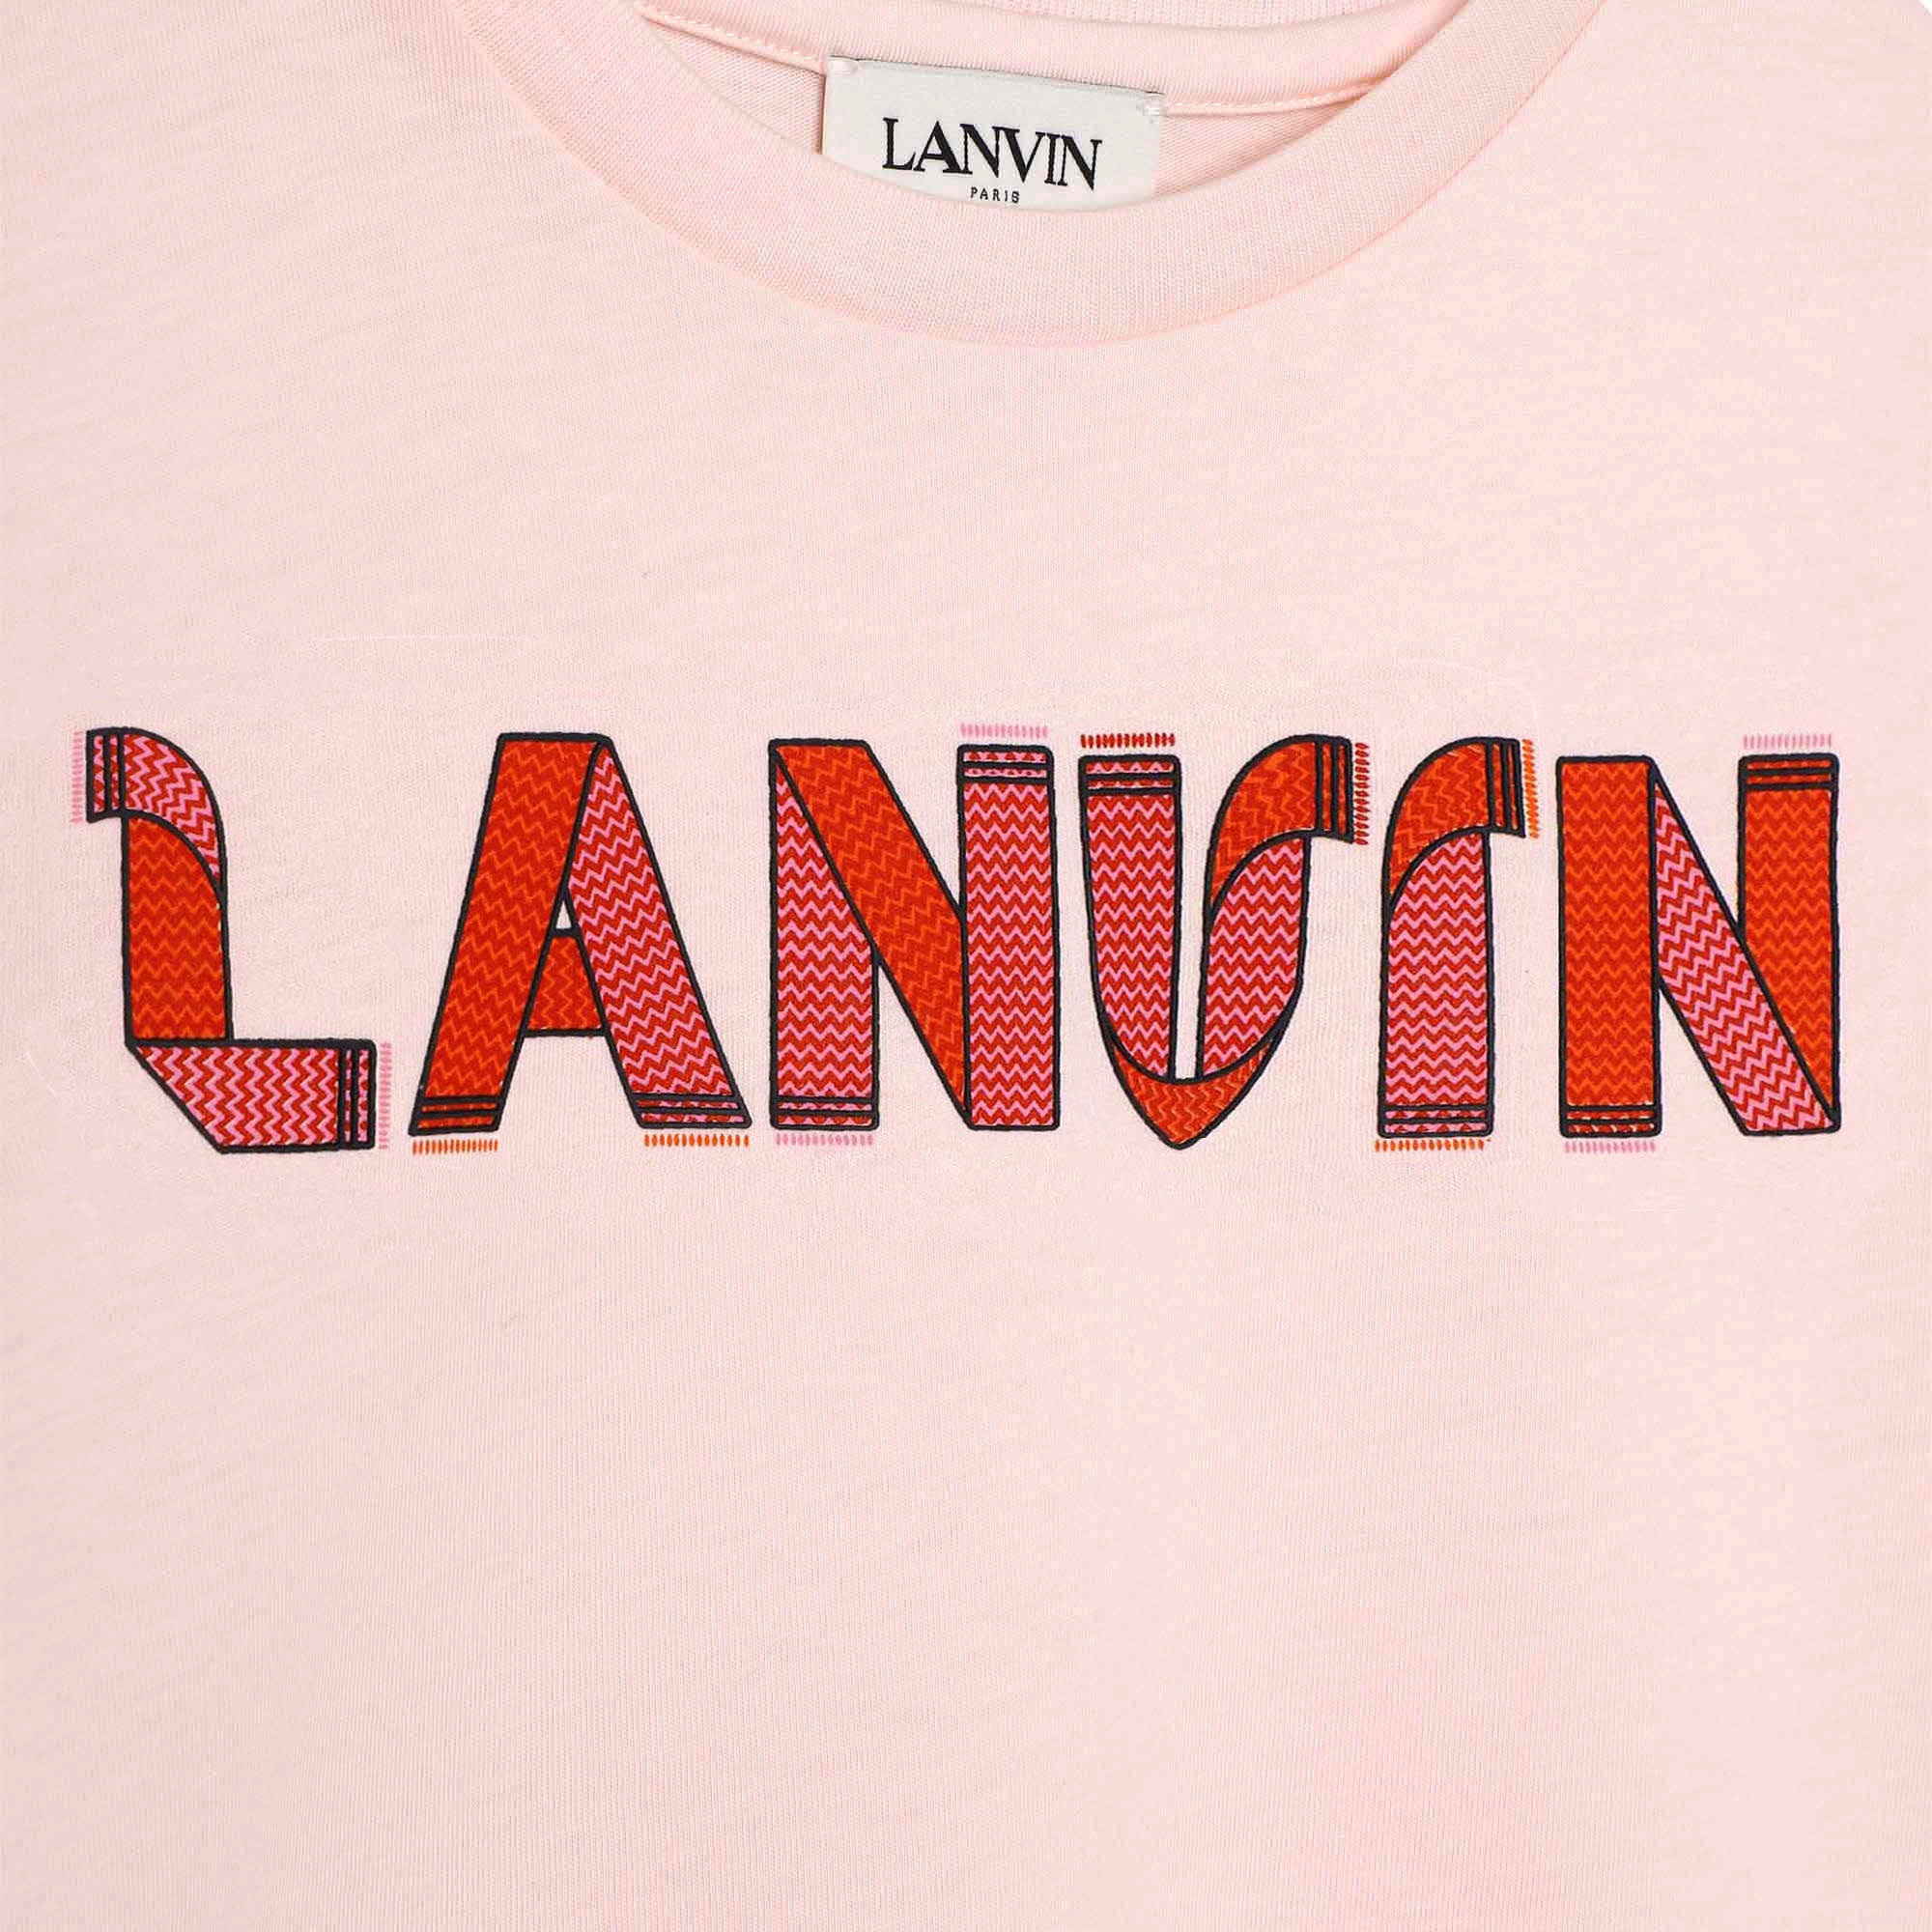 T-shirt imprimé façon lacet LANVIN pour FILLE